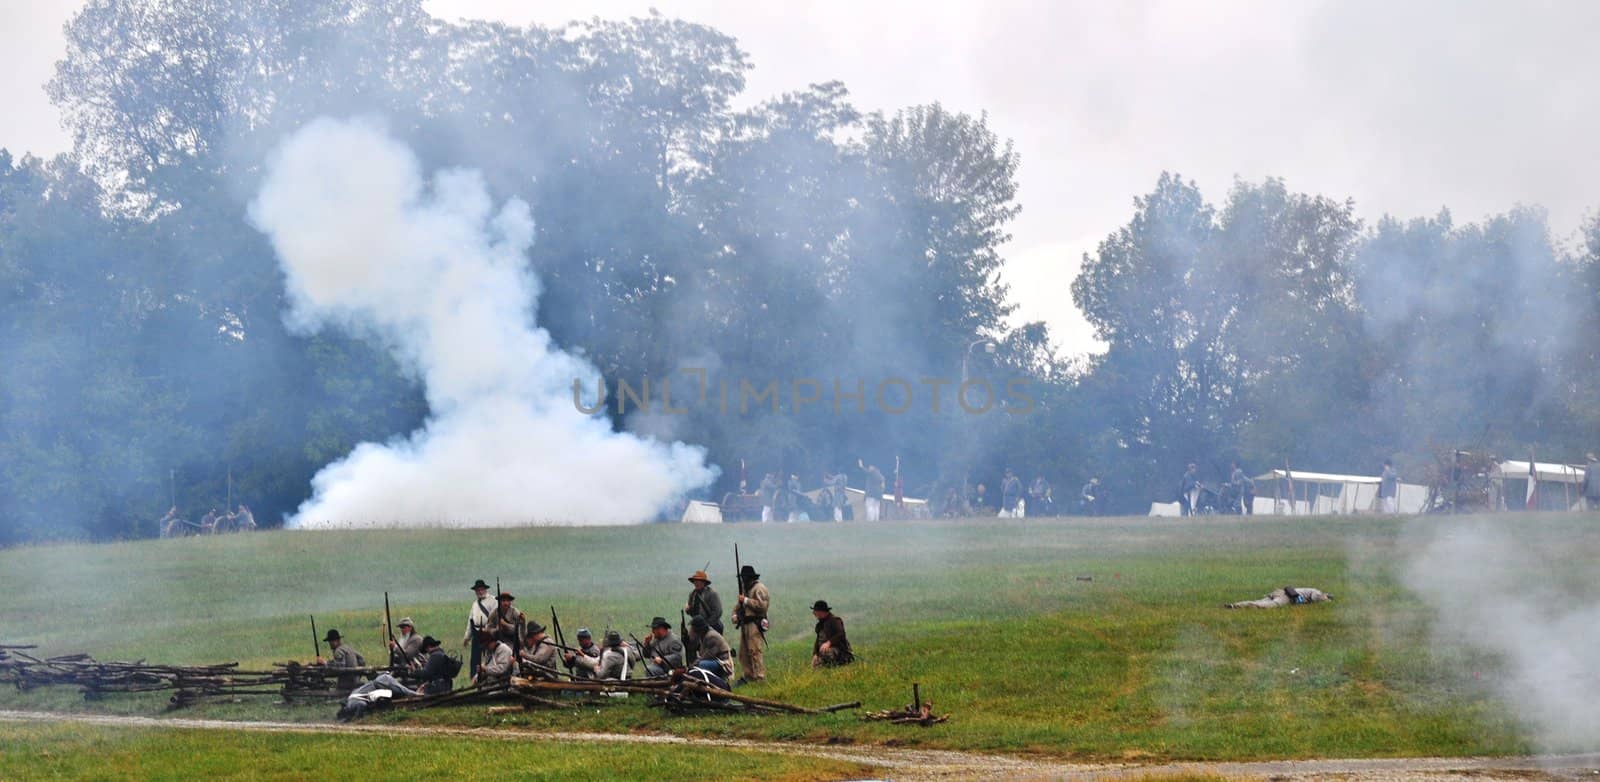 Civil War Re-enactment - Group battle by RefocusPhoto